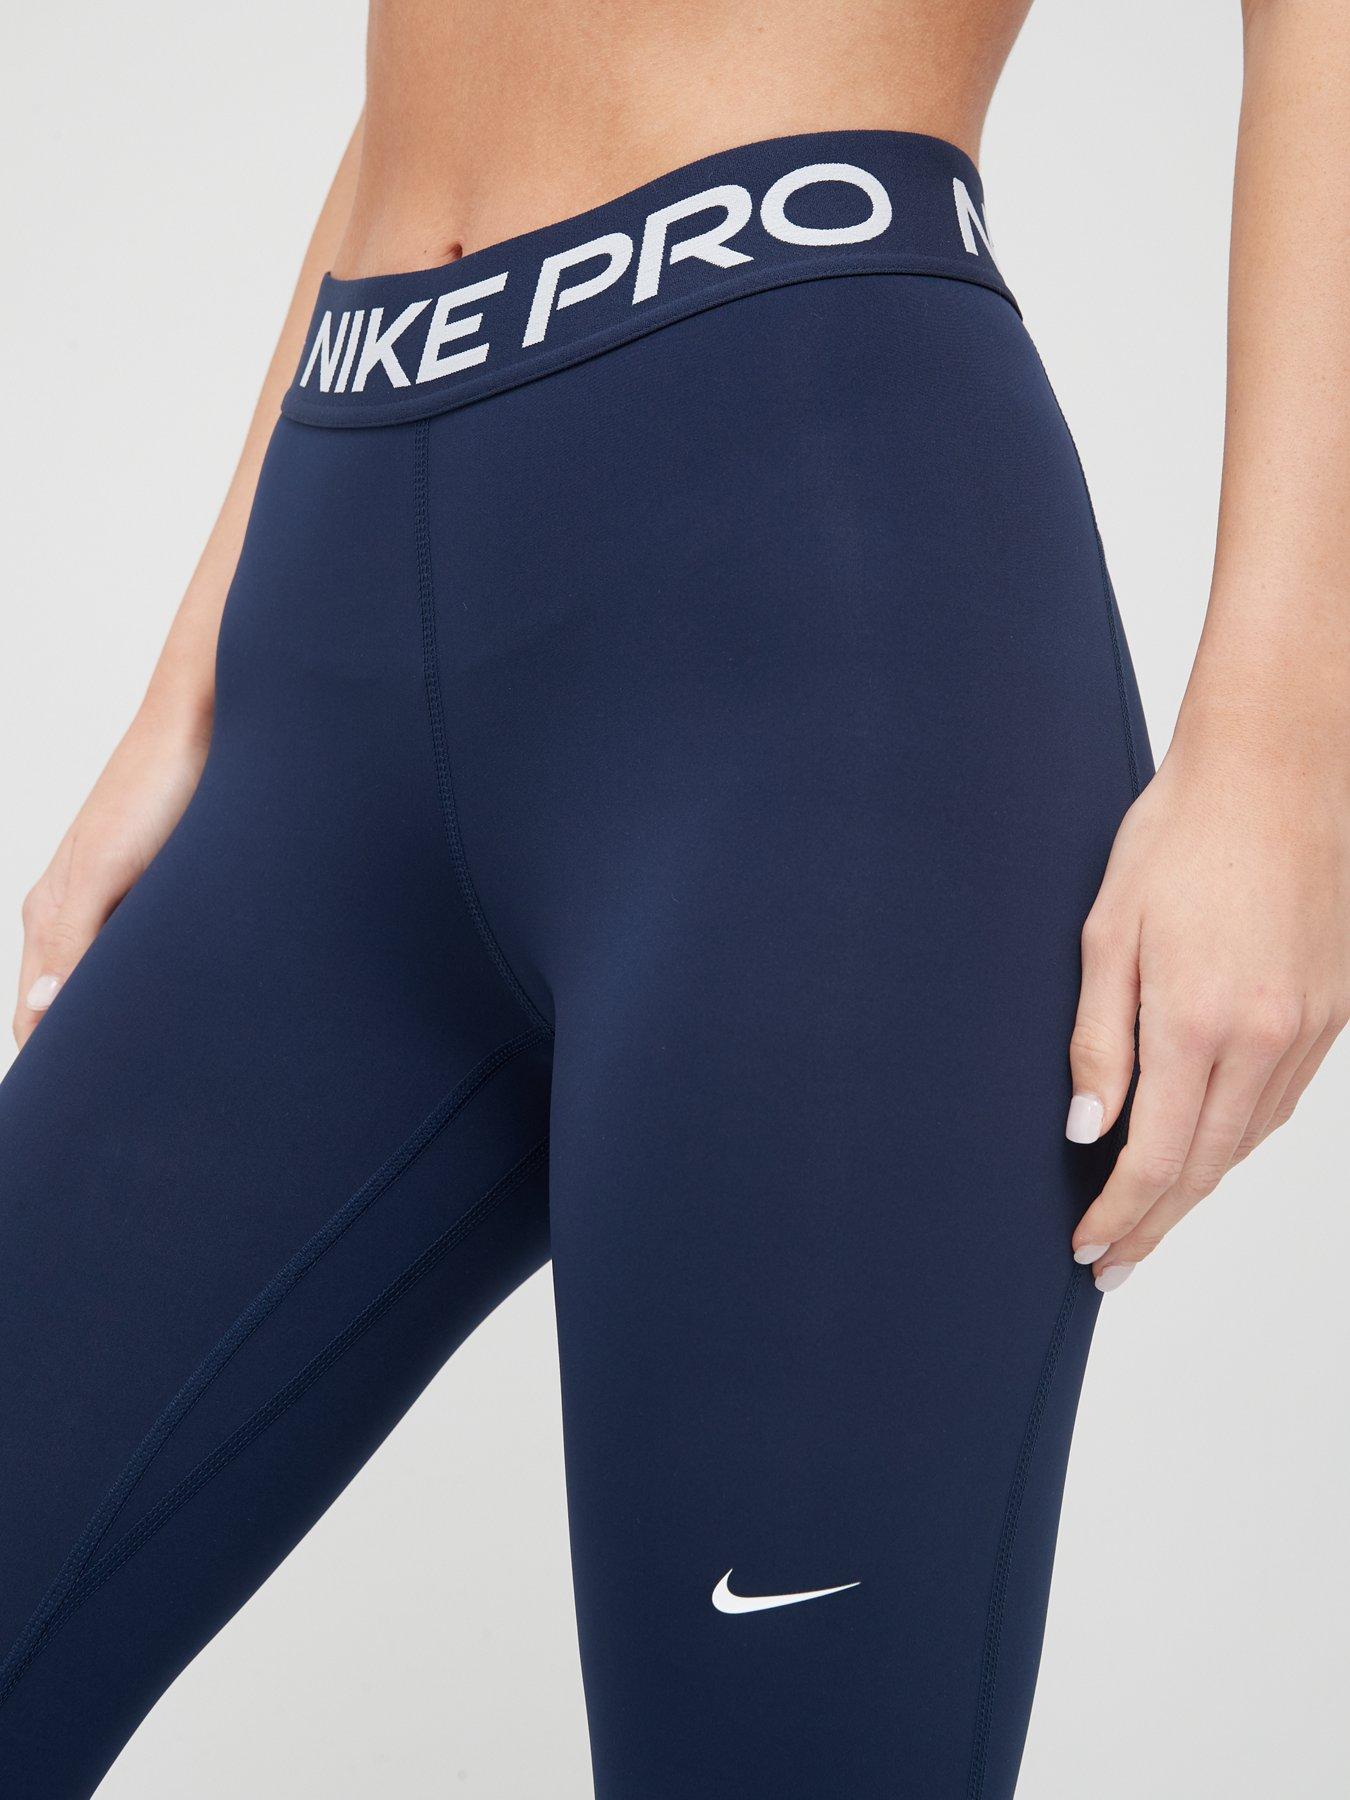 NIKE Unisex Nike Pro Tights Navy Trousers, Navy, XS UK : MainApps